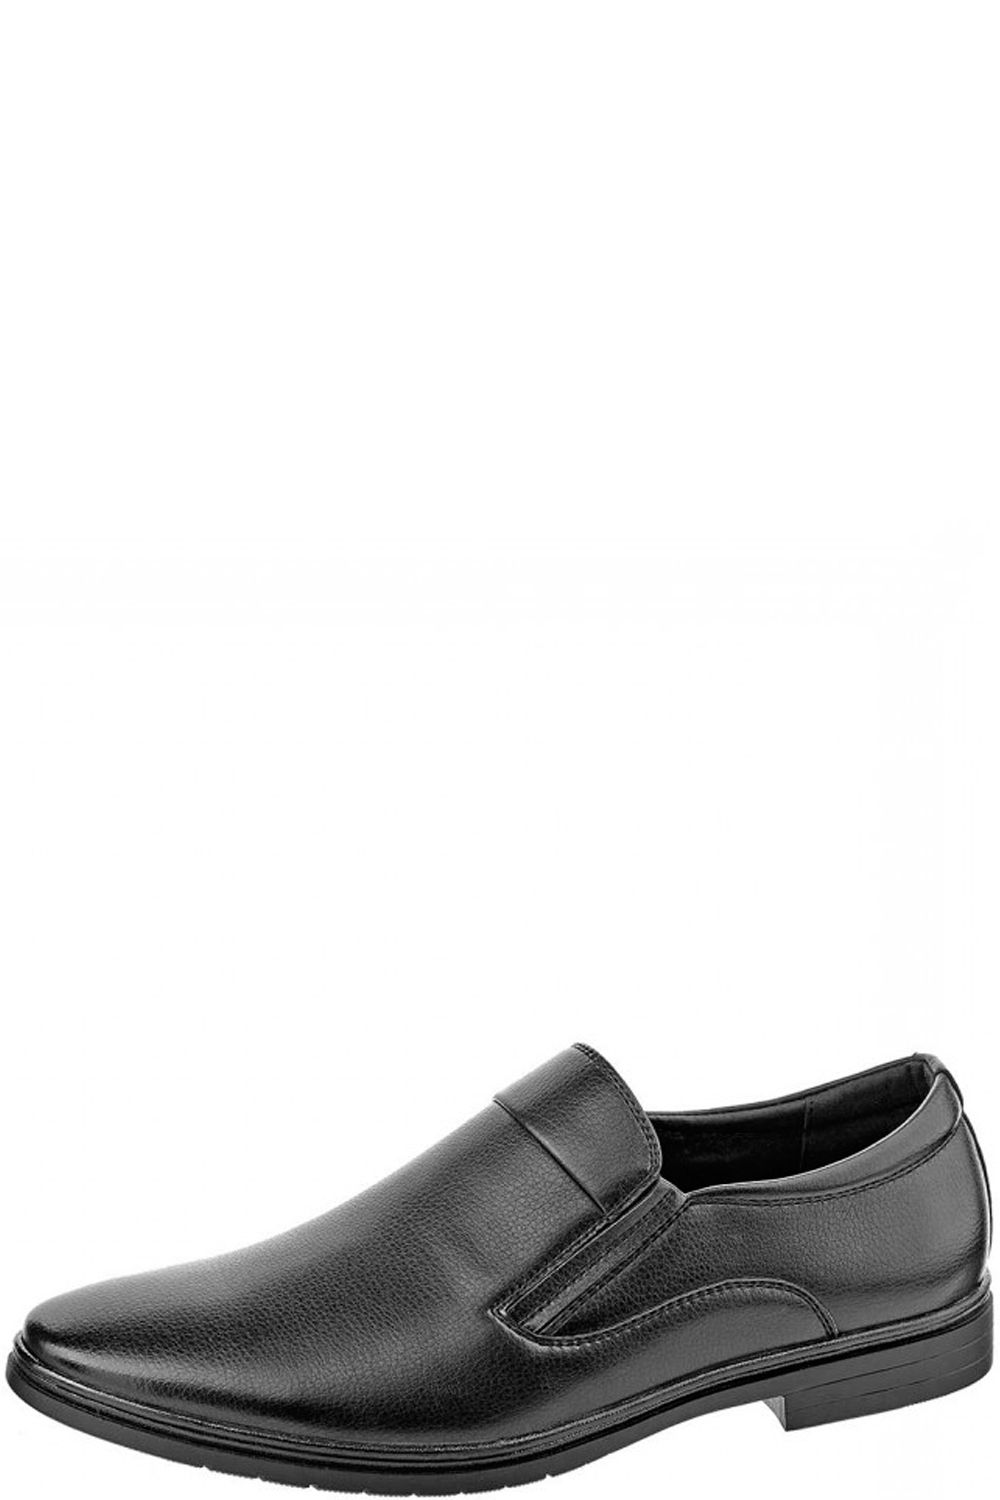 Туфли Keddo, размер 39, цвет черный 168670/02-11 - фото 1